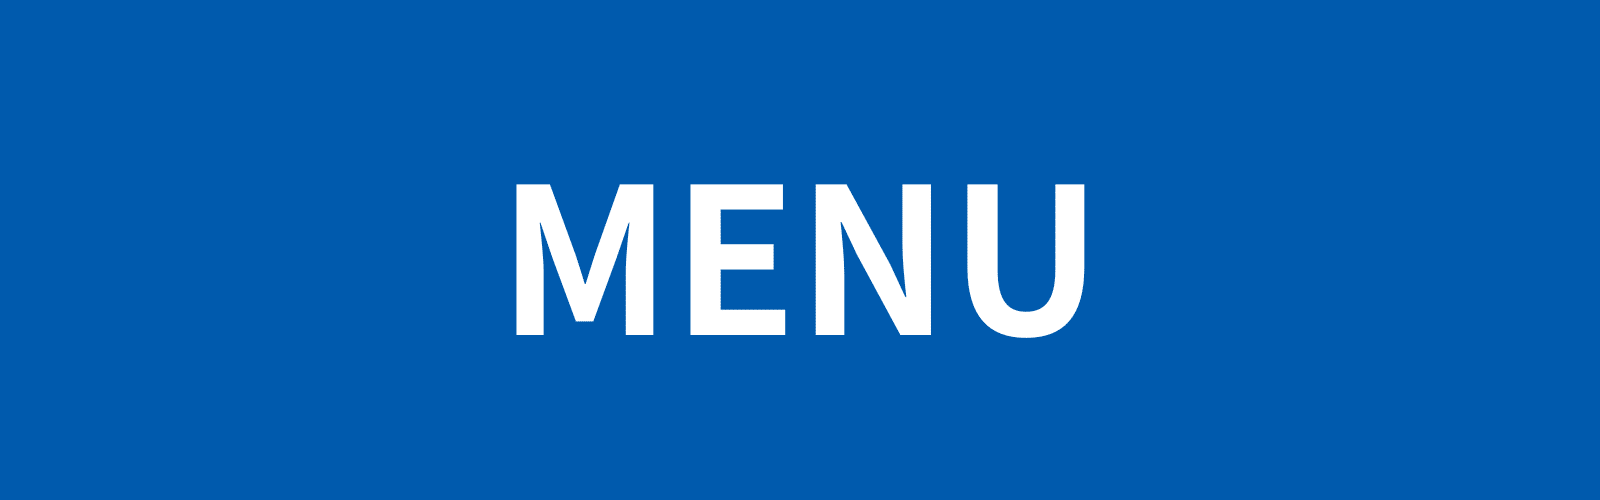 menu_総合メニュー